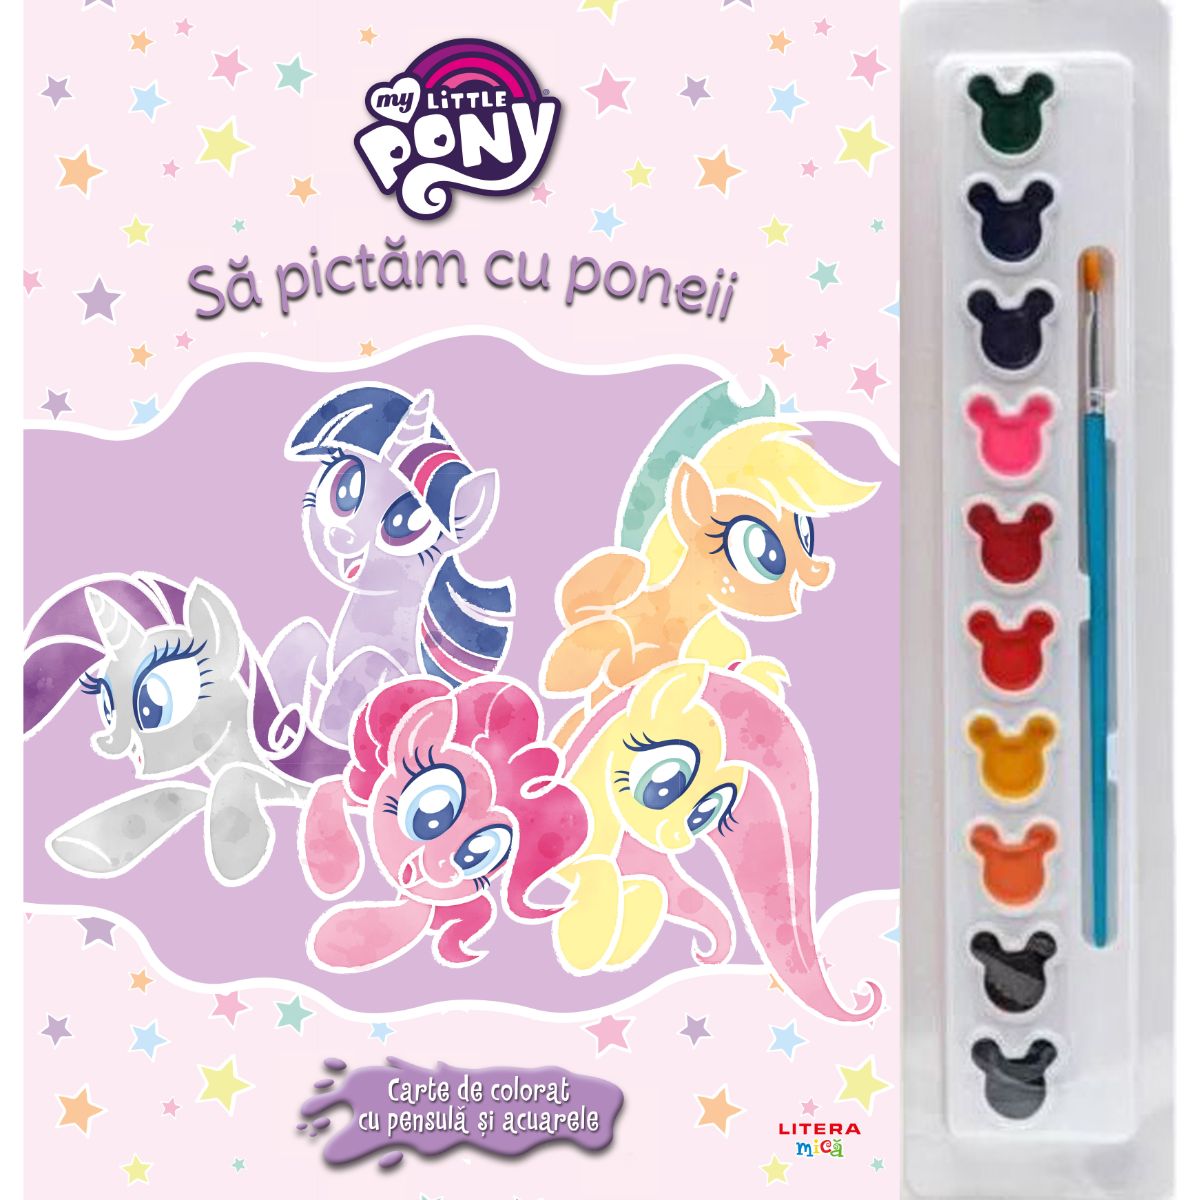 My little pony, Sa pictam cu poneii, Carte de colorat cu pensula si acuarele, Reeditare acuarele